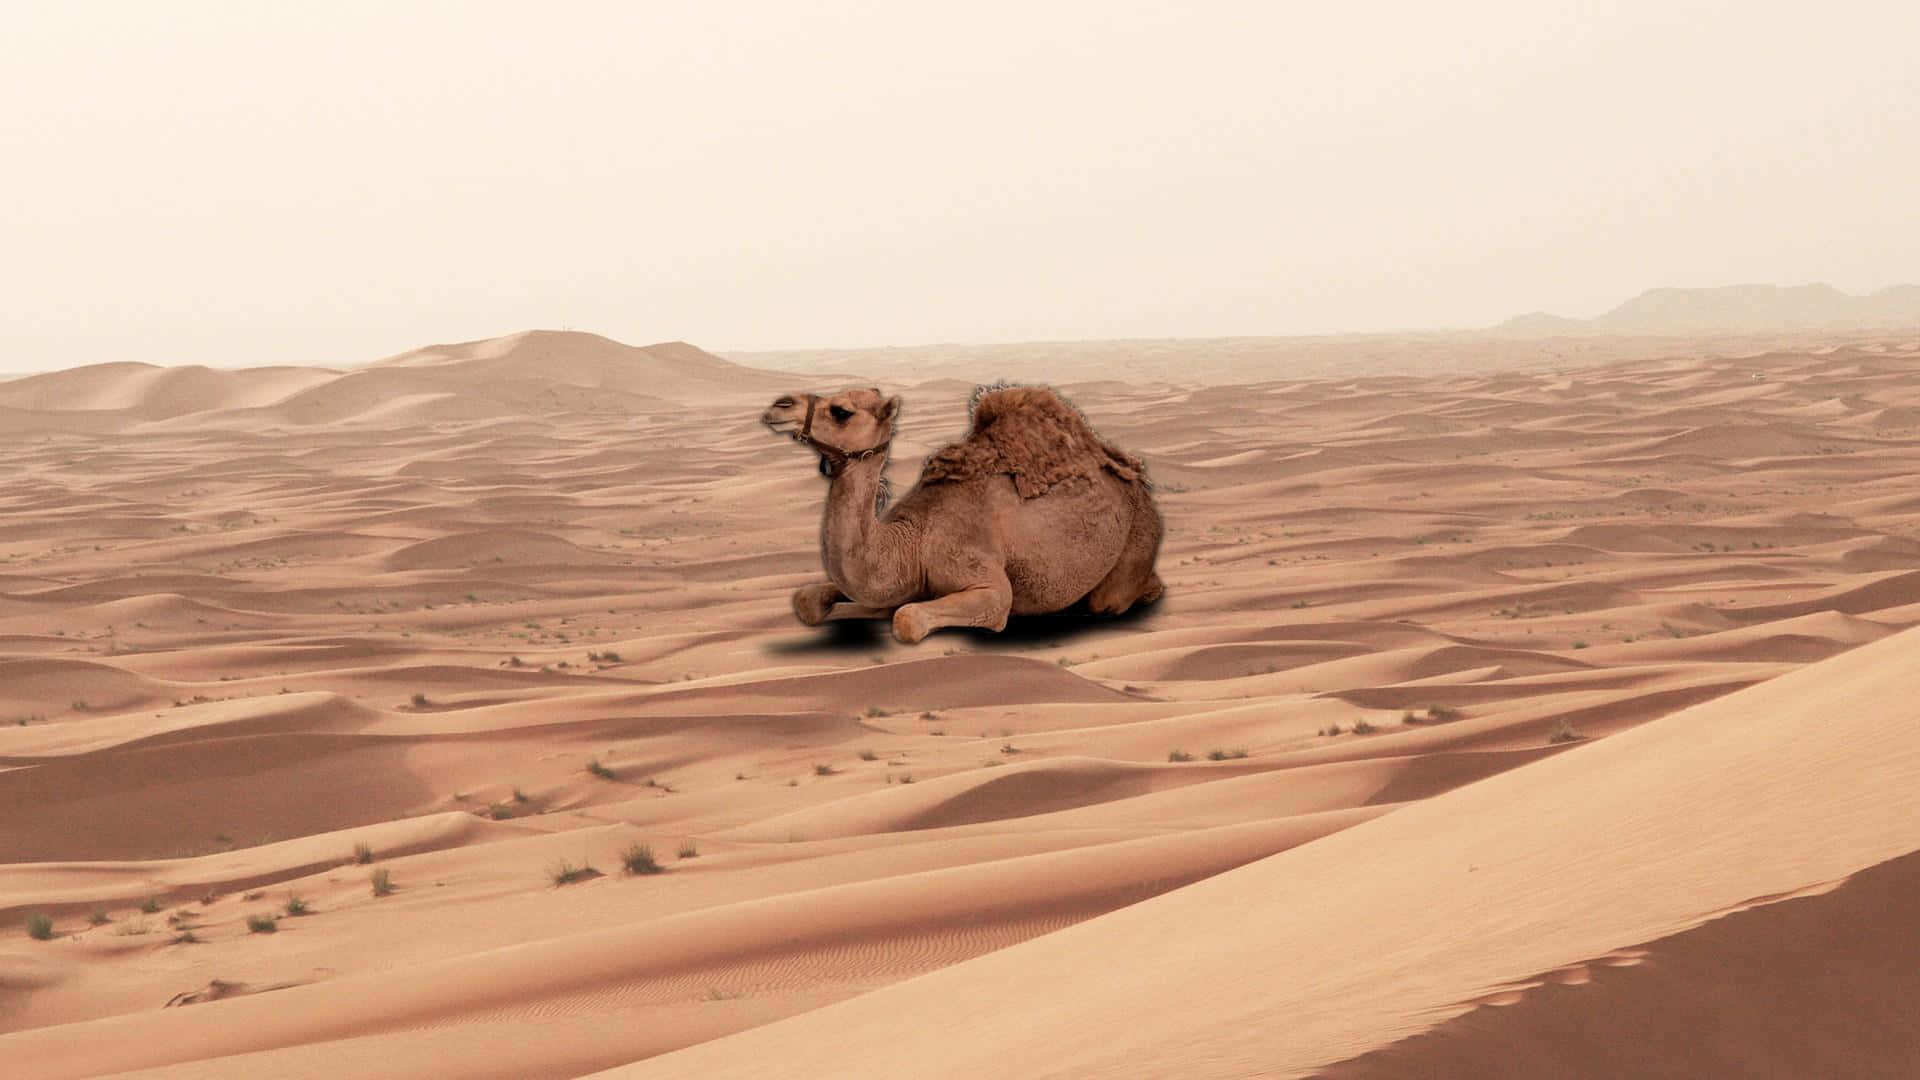 Uncammello Di Colore Marrone, Ambientato Su Uno Sfondo Del Deserto Arabo.